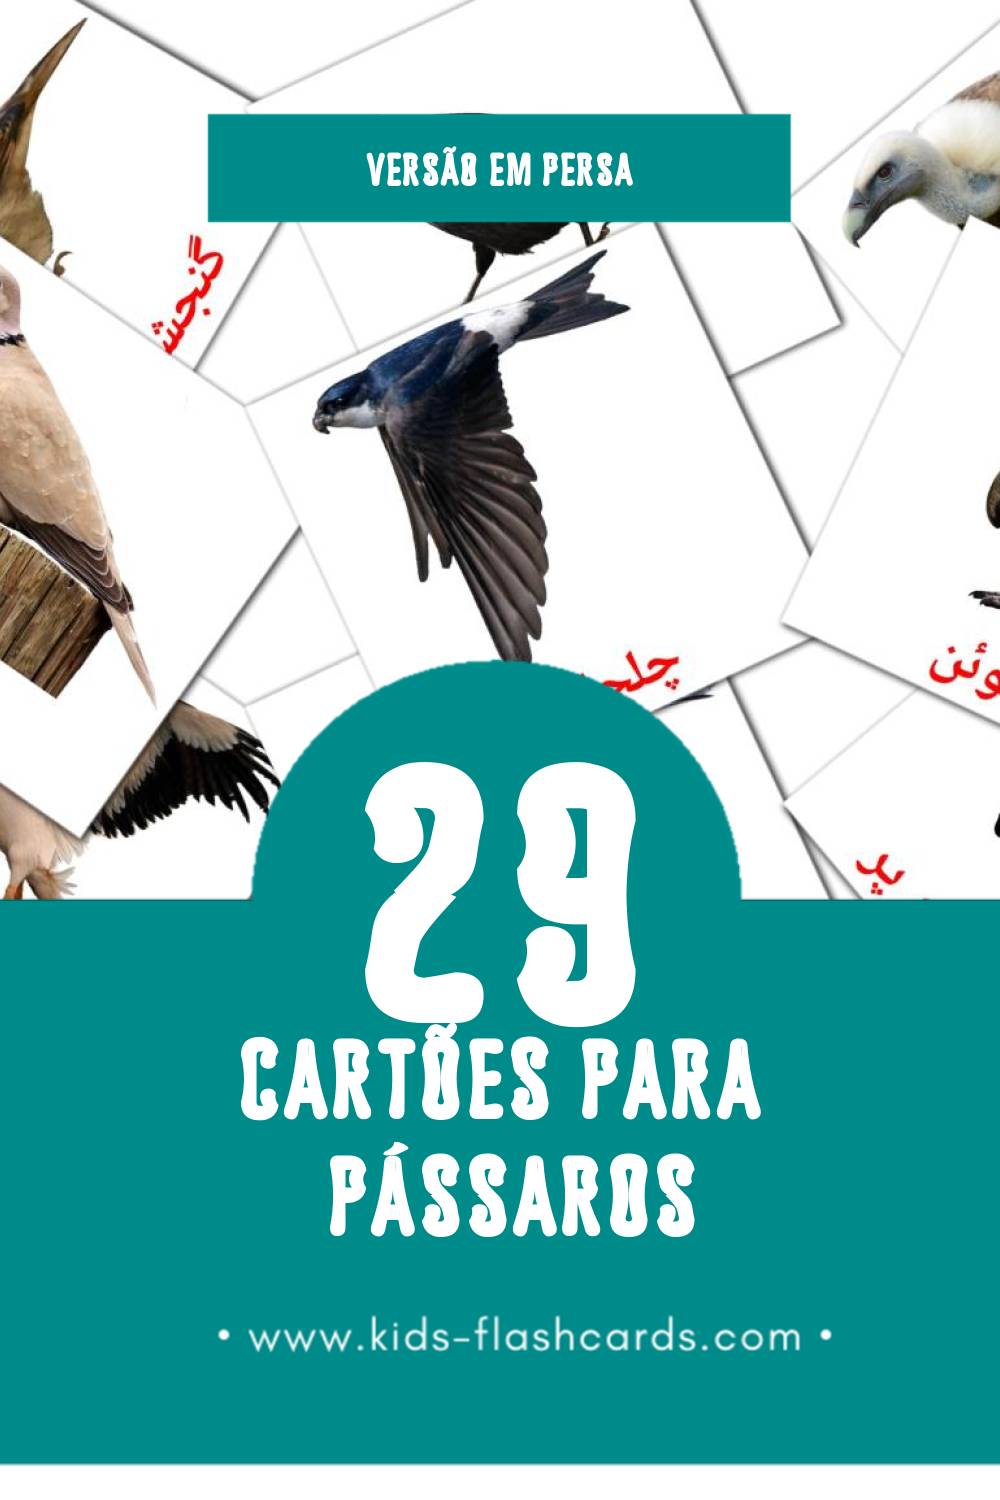 Flashcards de پرنده ها Visuais para Toddlers (29 cartões em Persa)